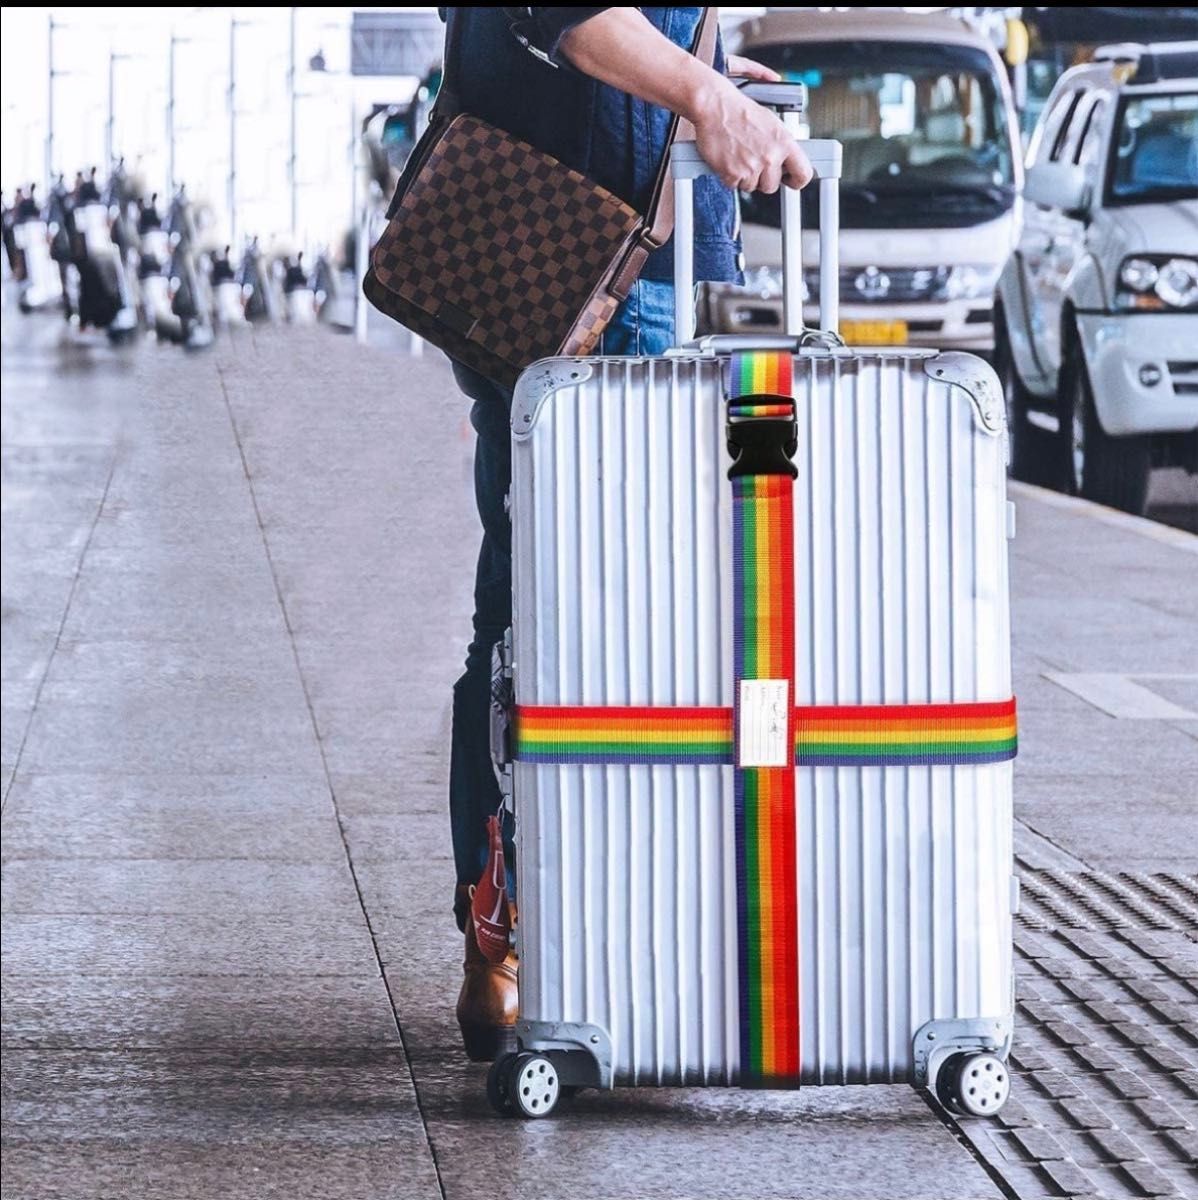 トランクベルト キャリーケースベルト 旅行 出張 盗難防止 荷崩れ防止 海外旅行 キャリーケース キャリーバッグ スーツケース